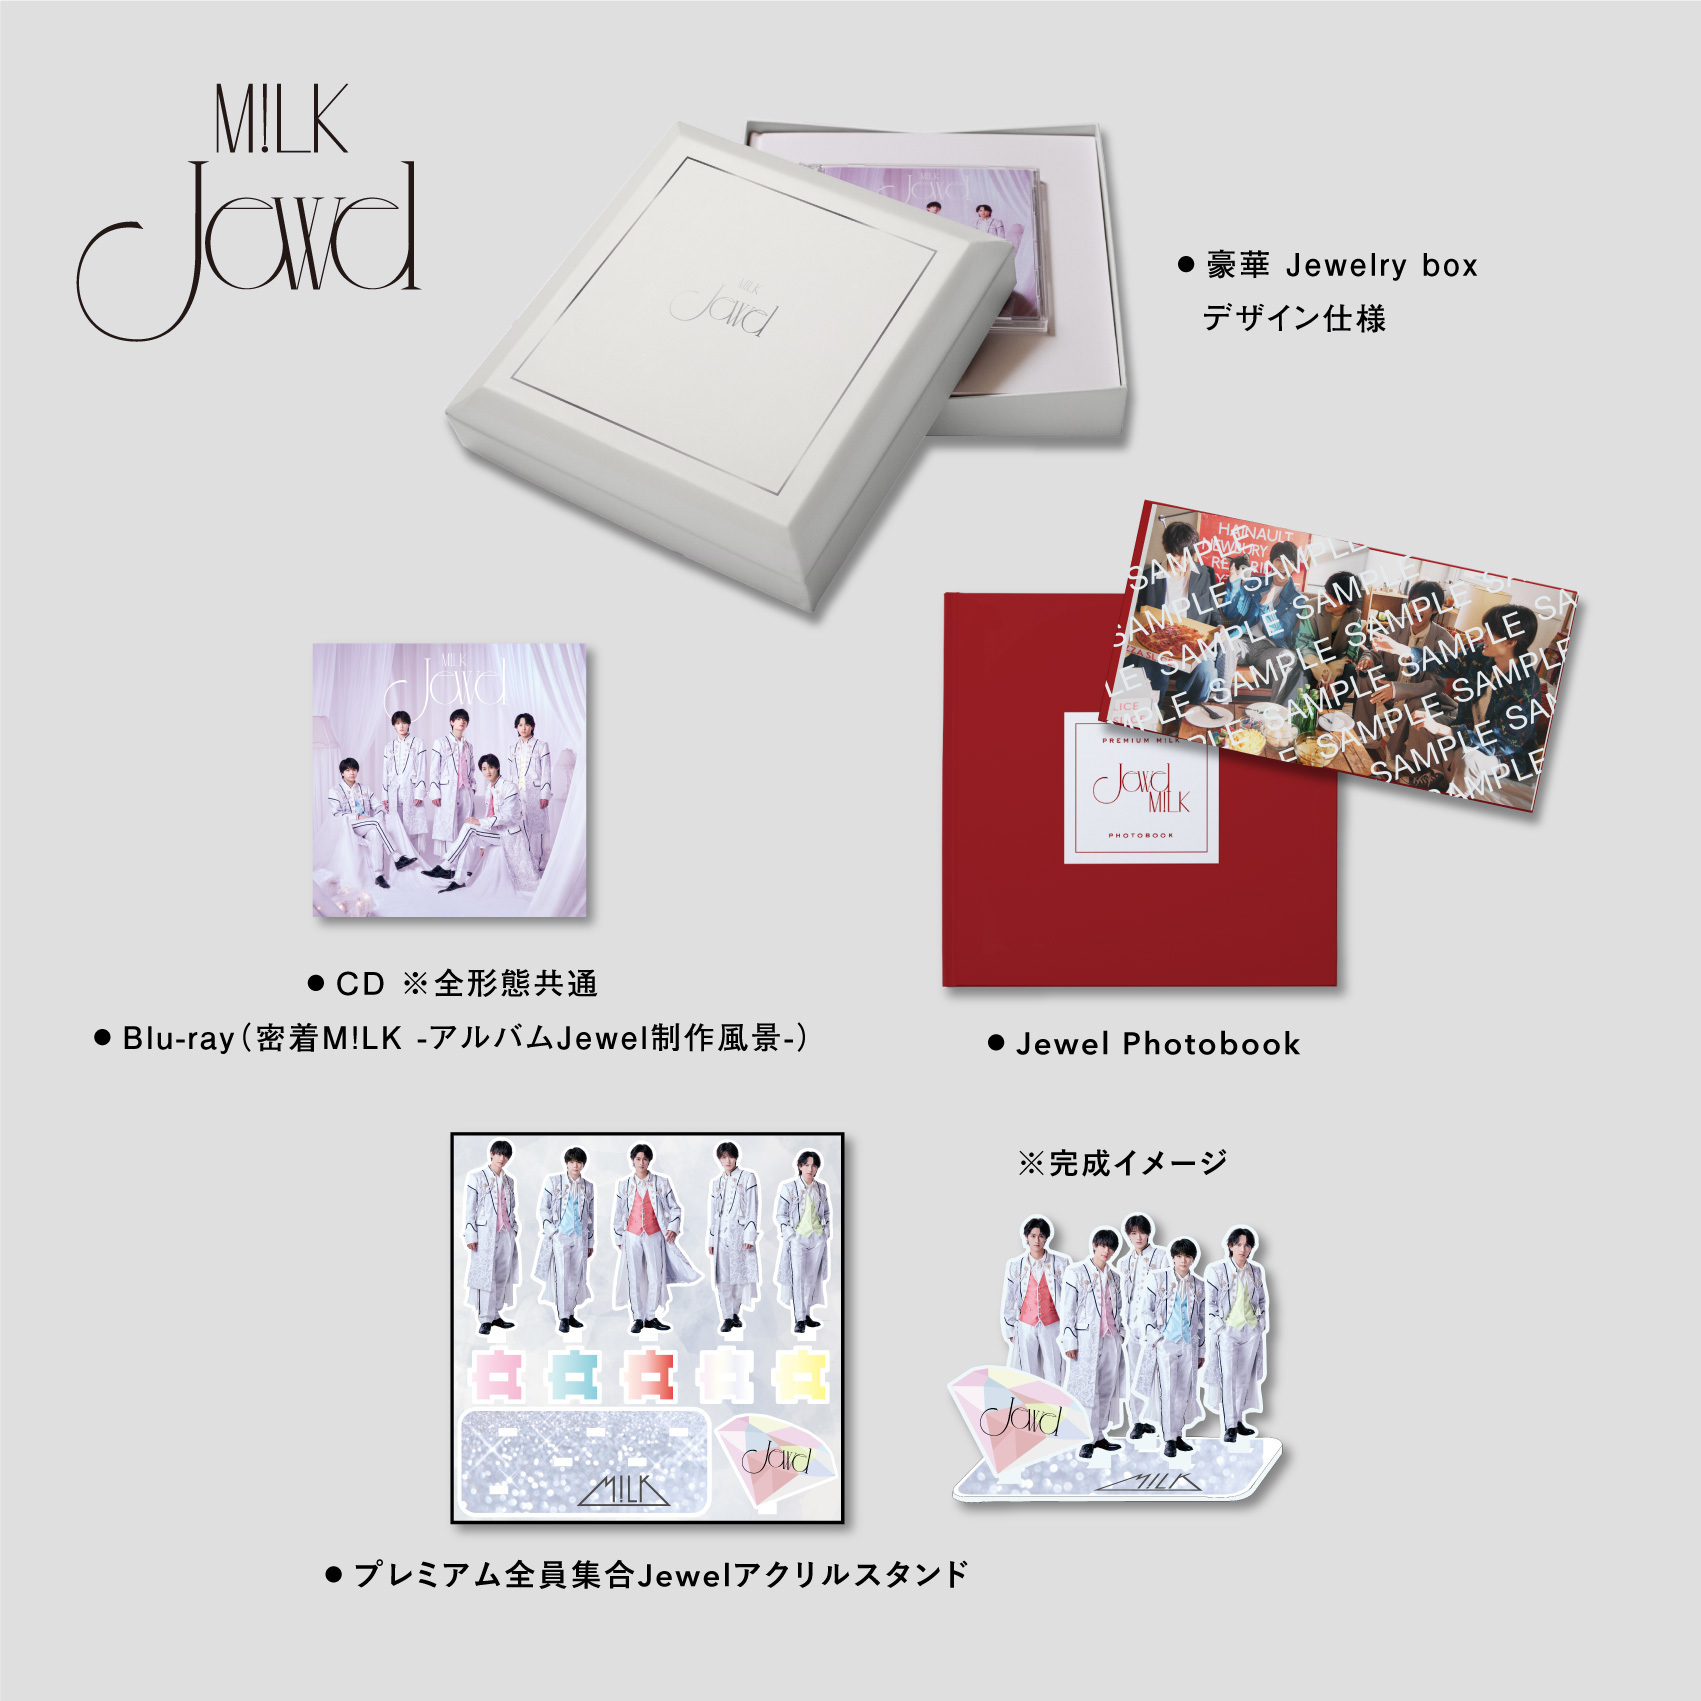 M!LK 6月14日(水)リリース メジャー1stアルバム「Jewel」公式ファン